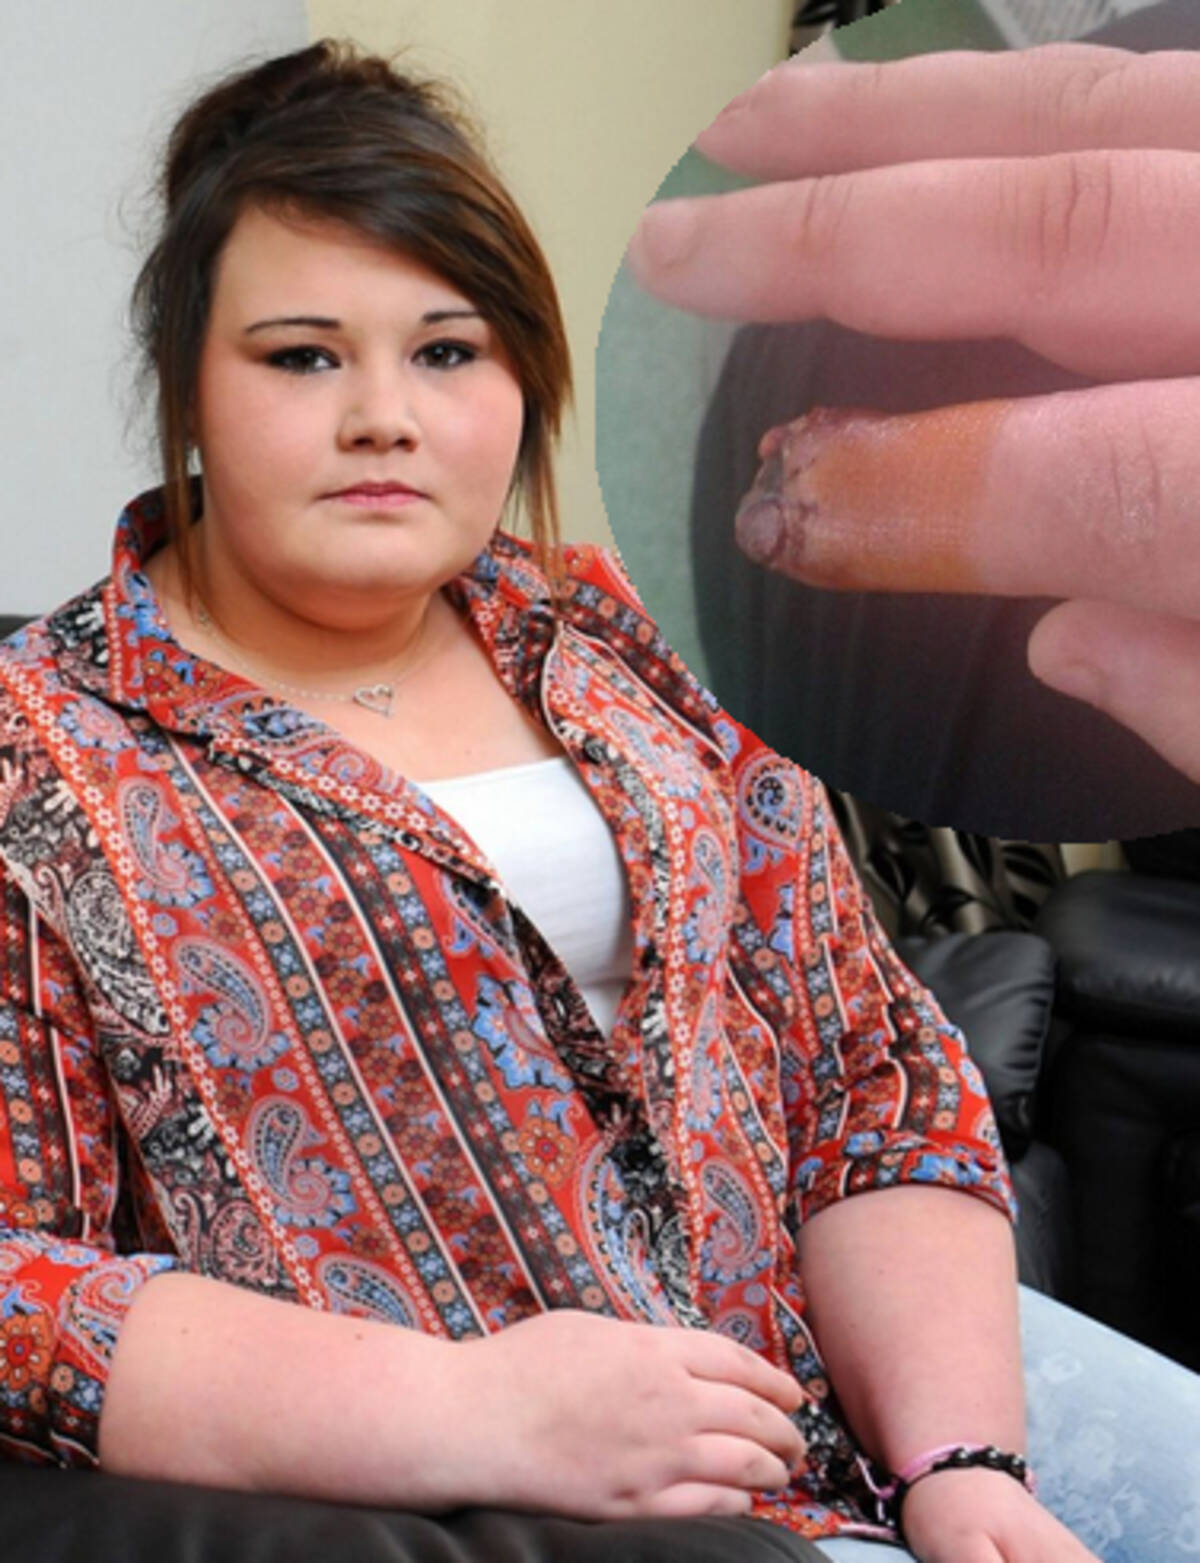 粗悪な つけ爪接着剤 で指先が壊死 深刻な感染症を発症した17歳少女 英 14年3月22日 エキサイトニュース